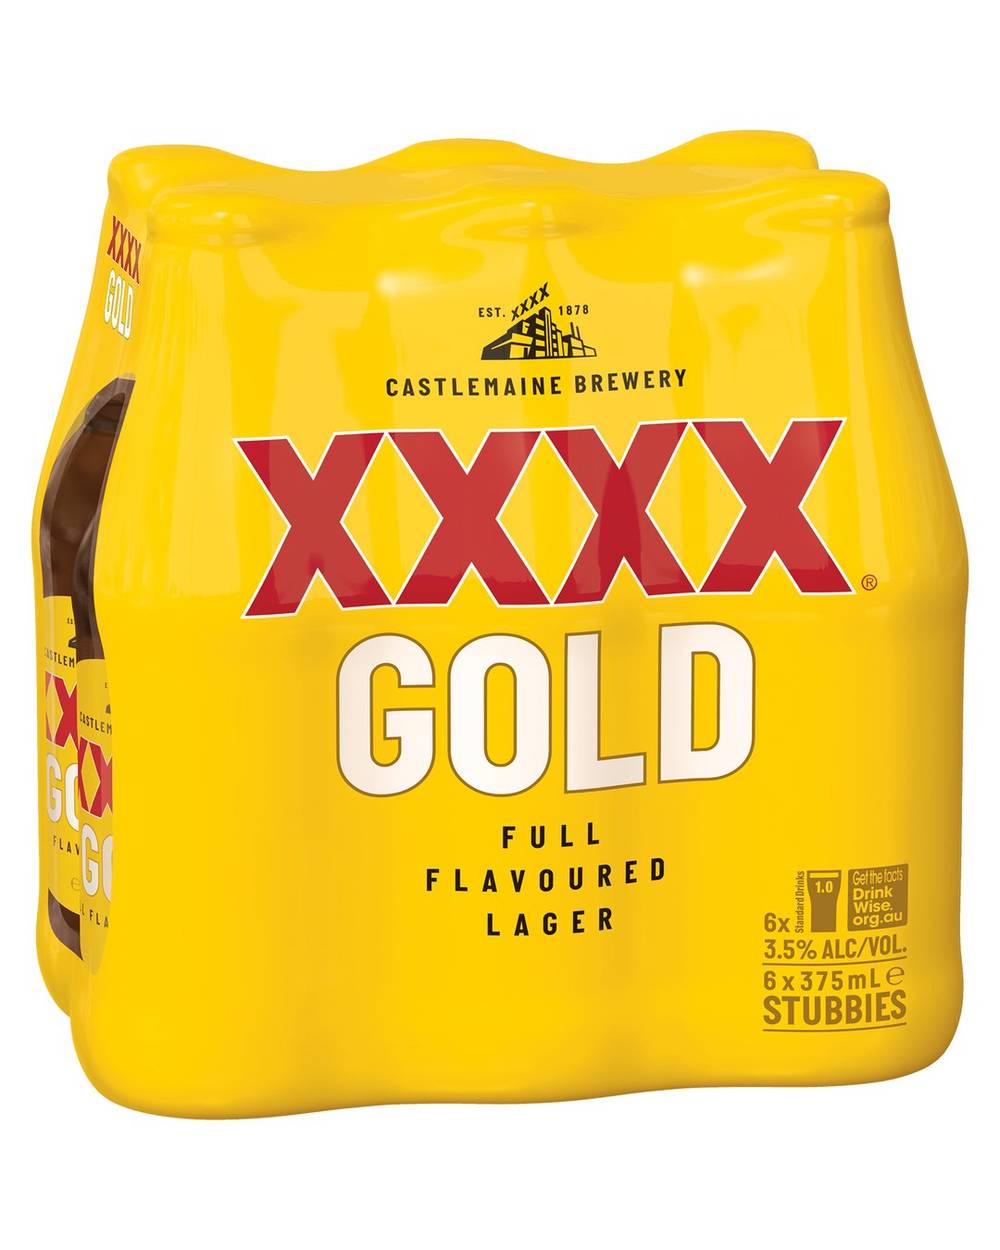 XXXX Gold Bottles 6x375mL